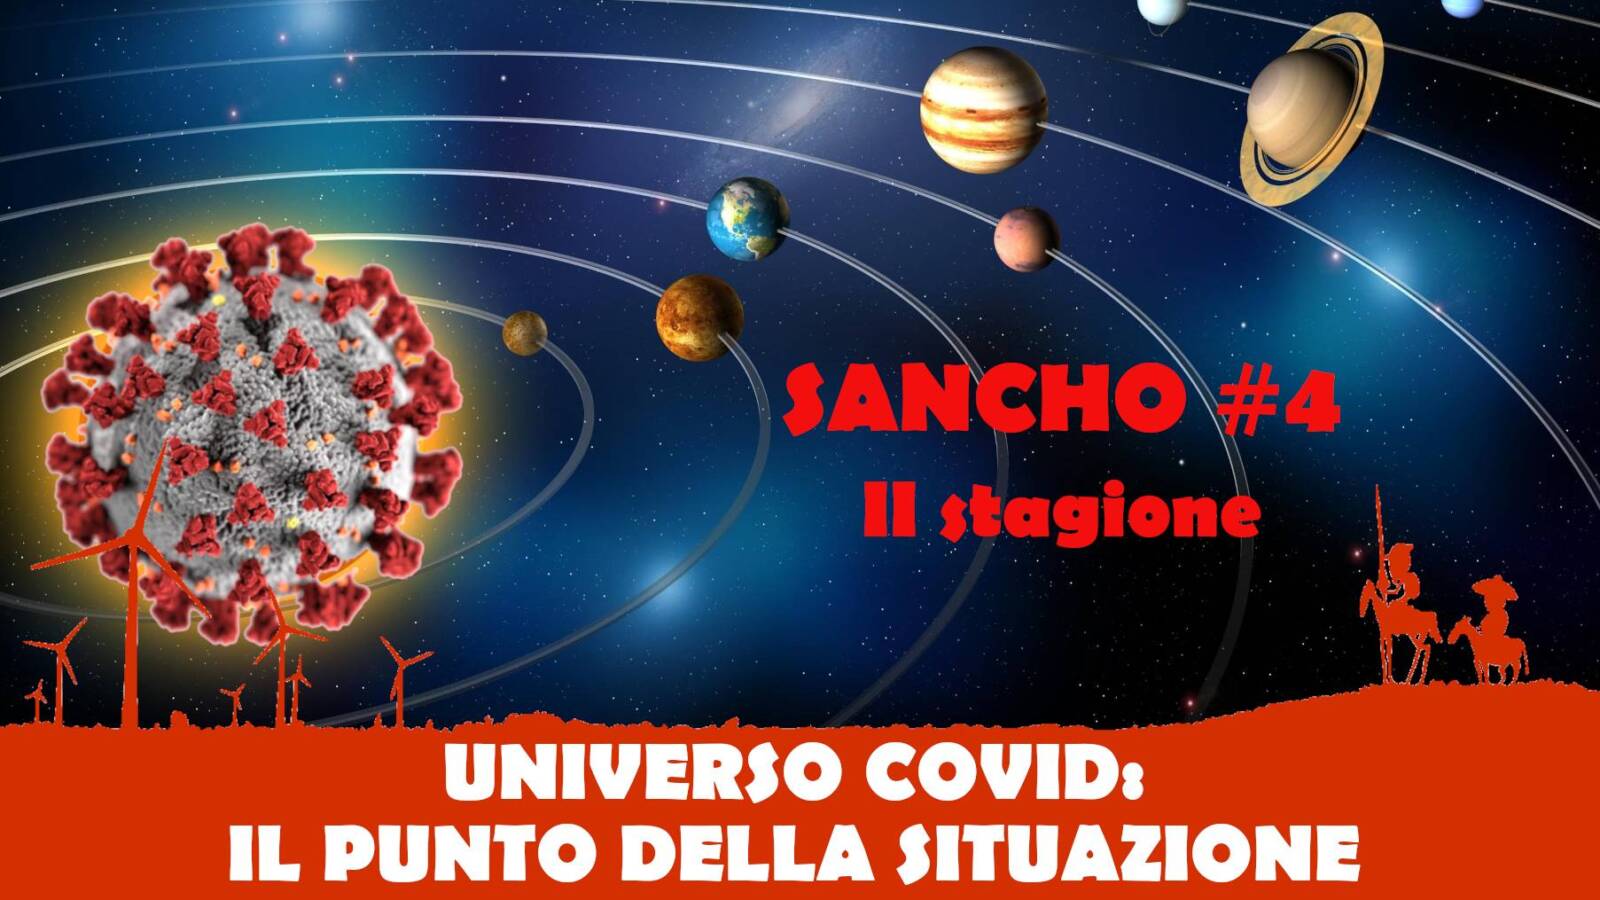 Sancho #4 II stagione - Fulvio Grimaldi - UNIVERSO COVID: IL PUNTO DELLA SITUAZIONE